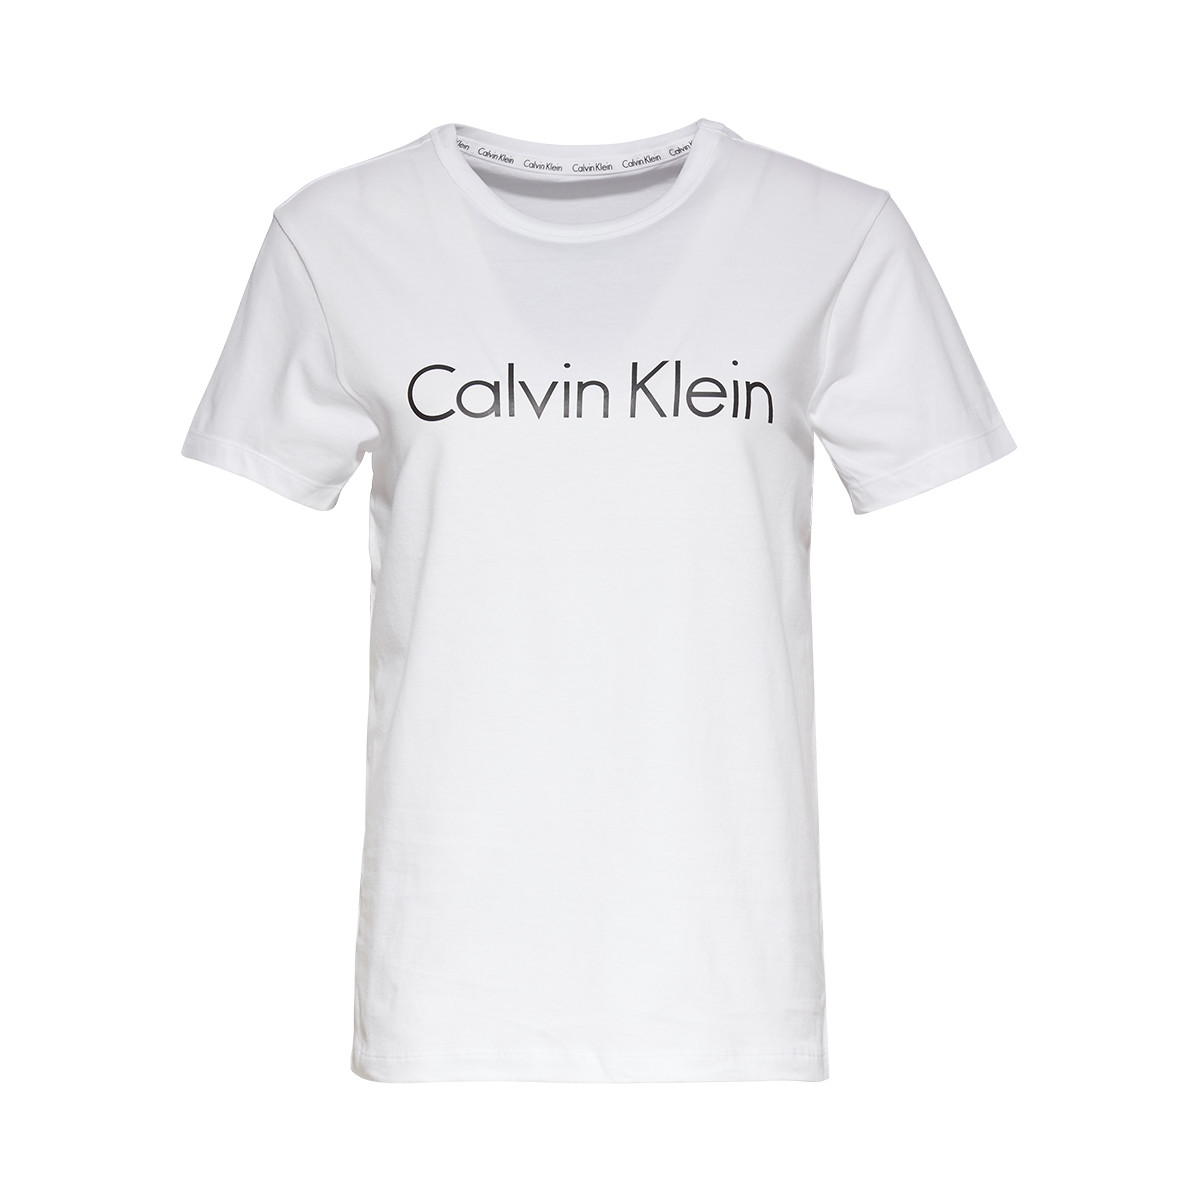 Se Calvin Klein T-shirt, Farve: Hvid, Størrelse: XS, Dame hos Netlingeri.dk